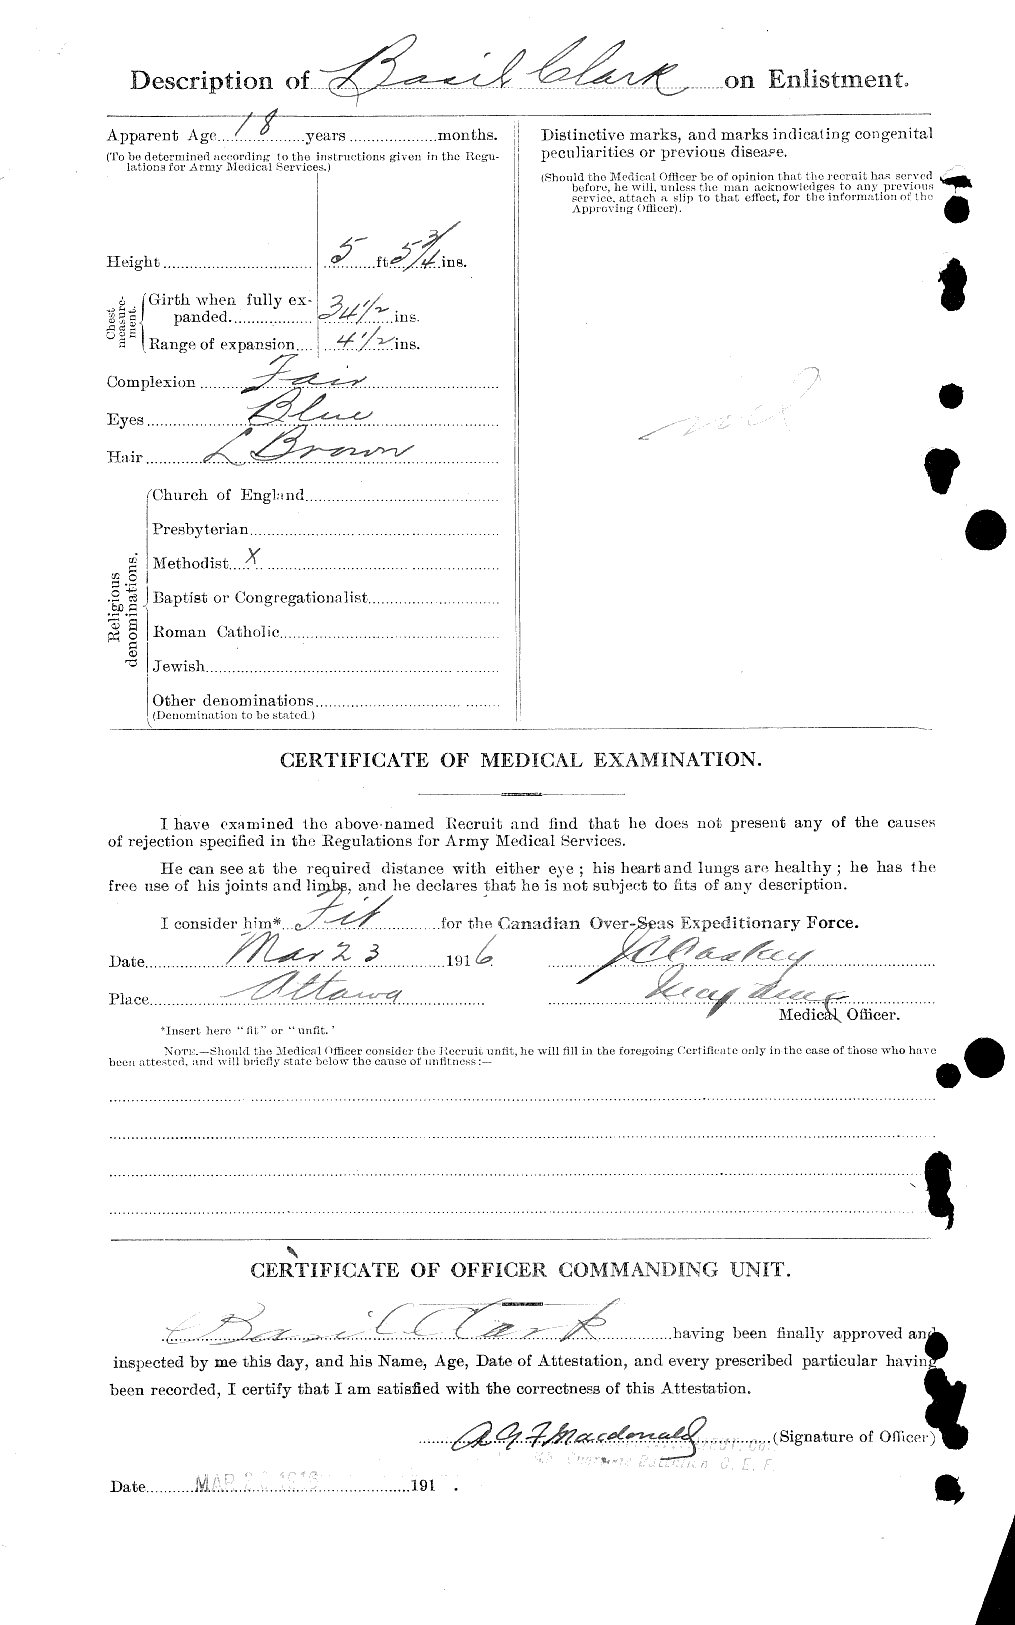 Dossiers du Personnel de la Première Guerre mondiale - CEC 022870b